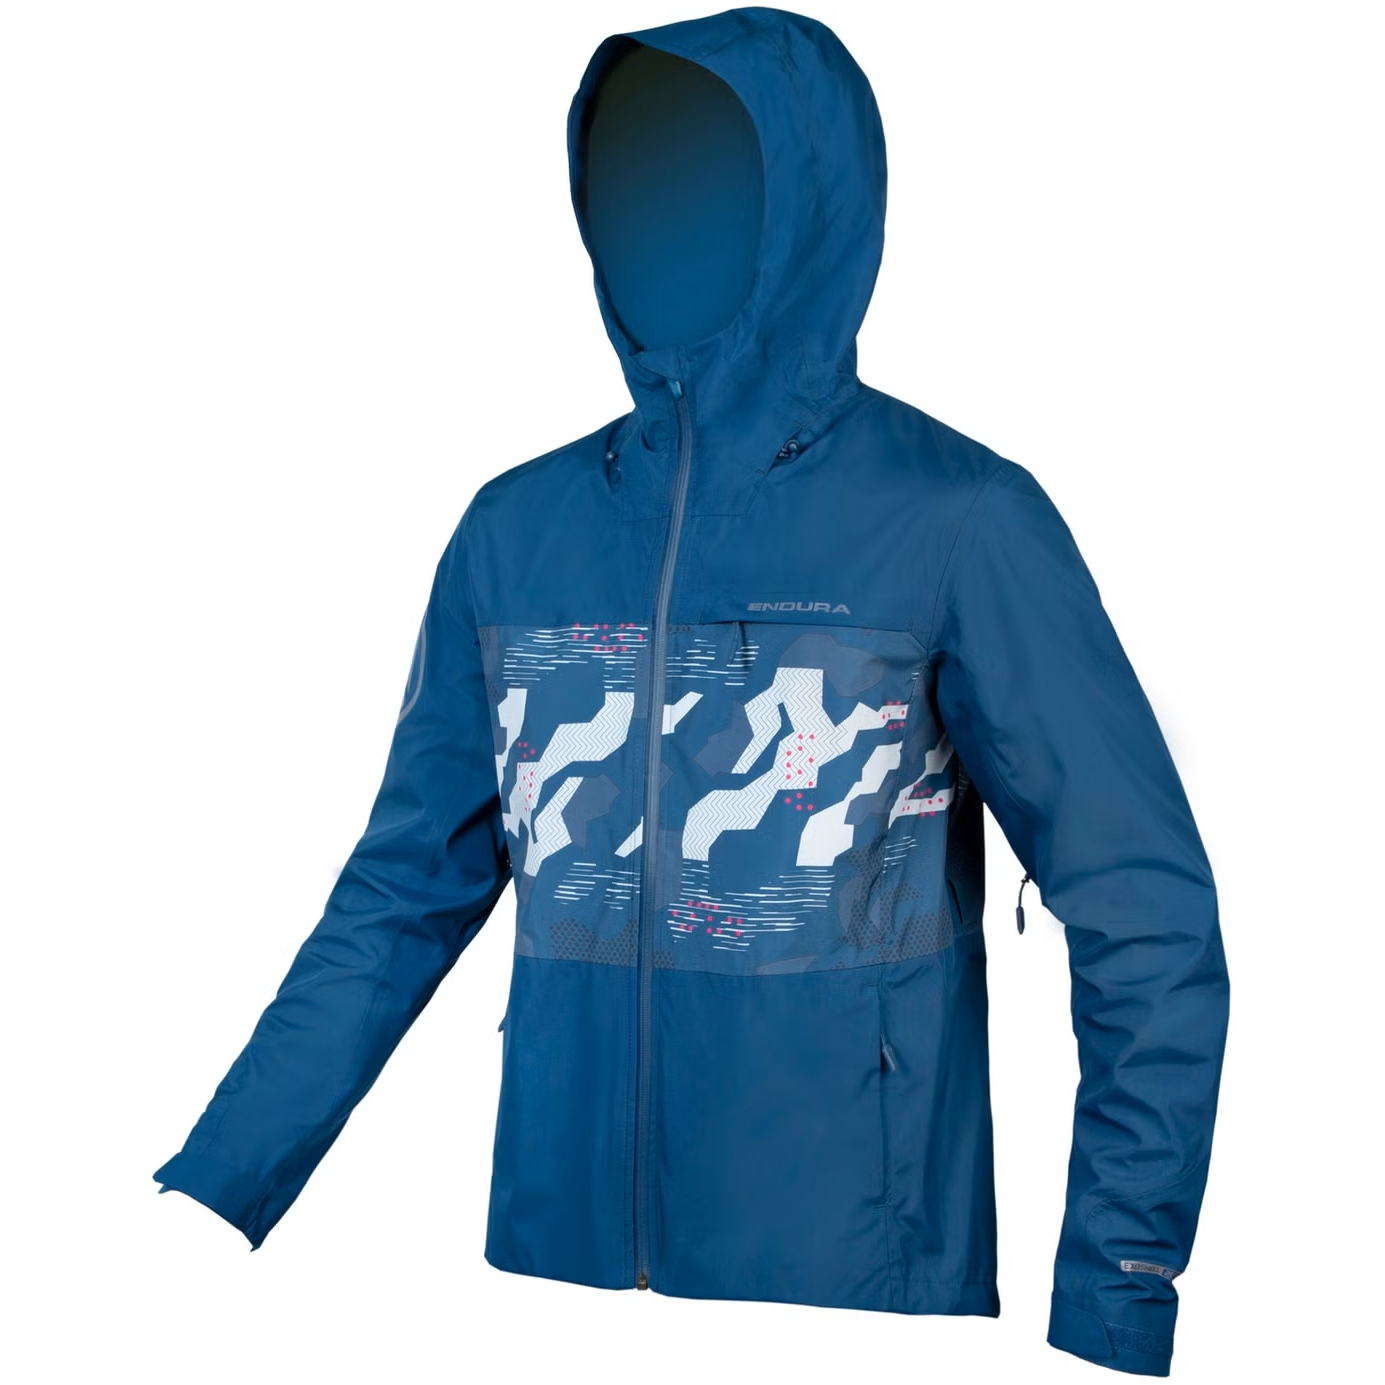 Produktbild von Endura SingleTrack II Wasserdichte Jacke Herren - blaubeere